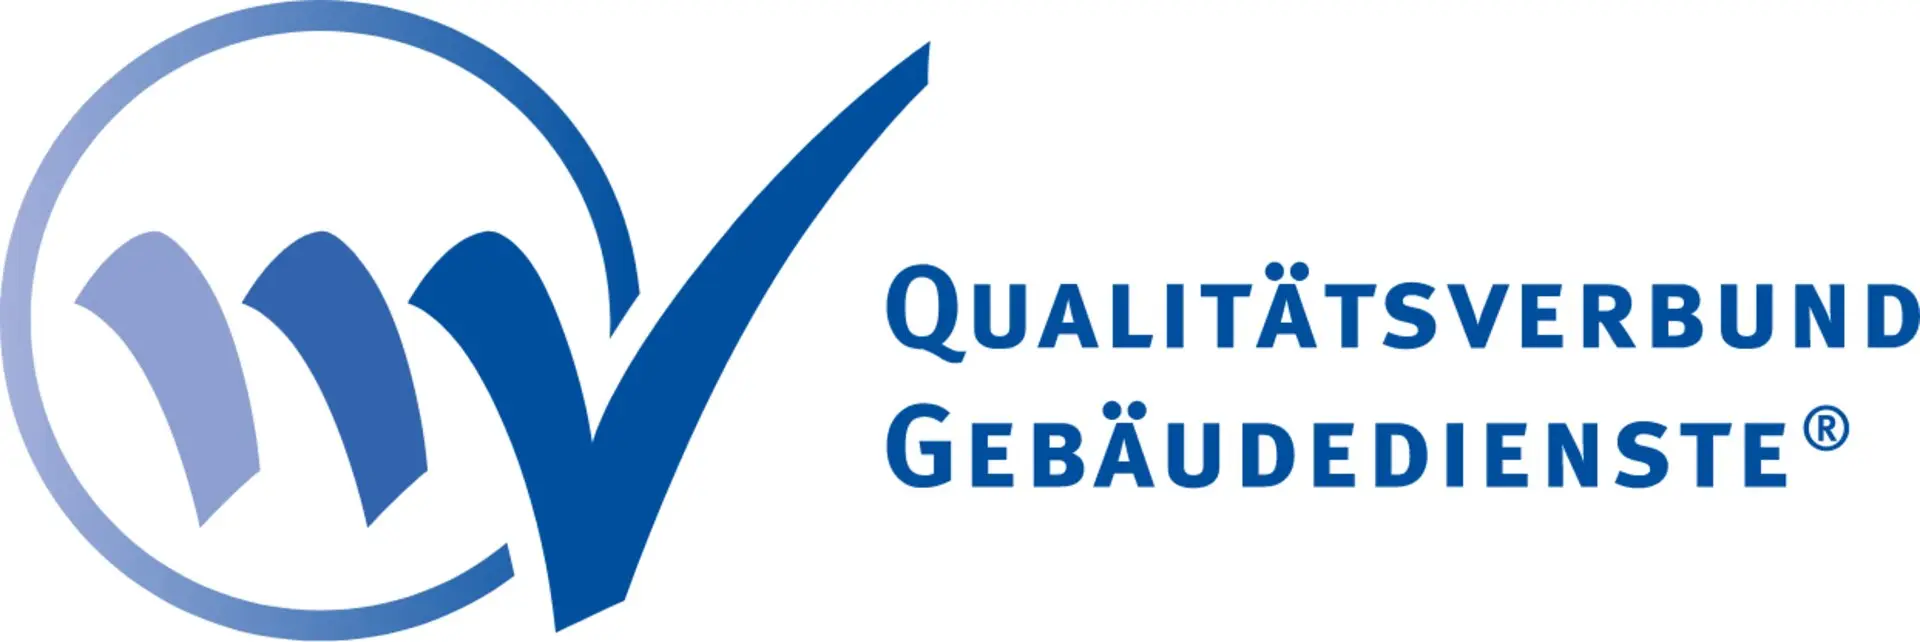 Das Logo des Qualitätsverbundes für Gebäudedienste, welche Gebäudereinigung Ebrecht Reker ausgezeichnet hat